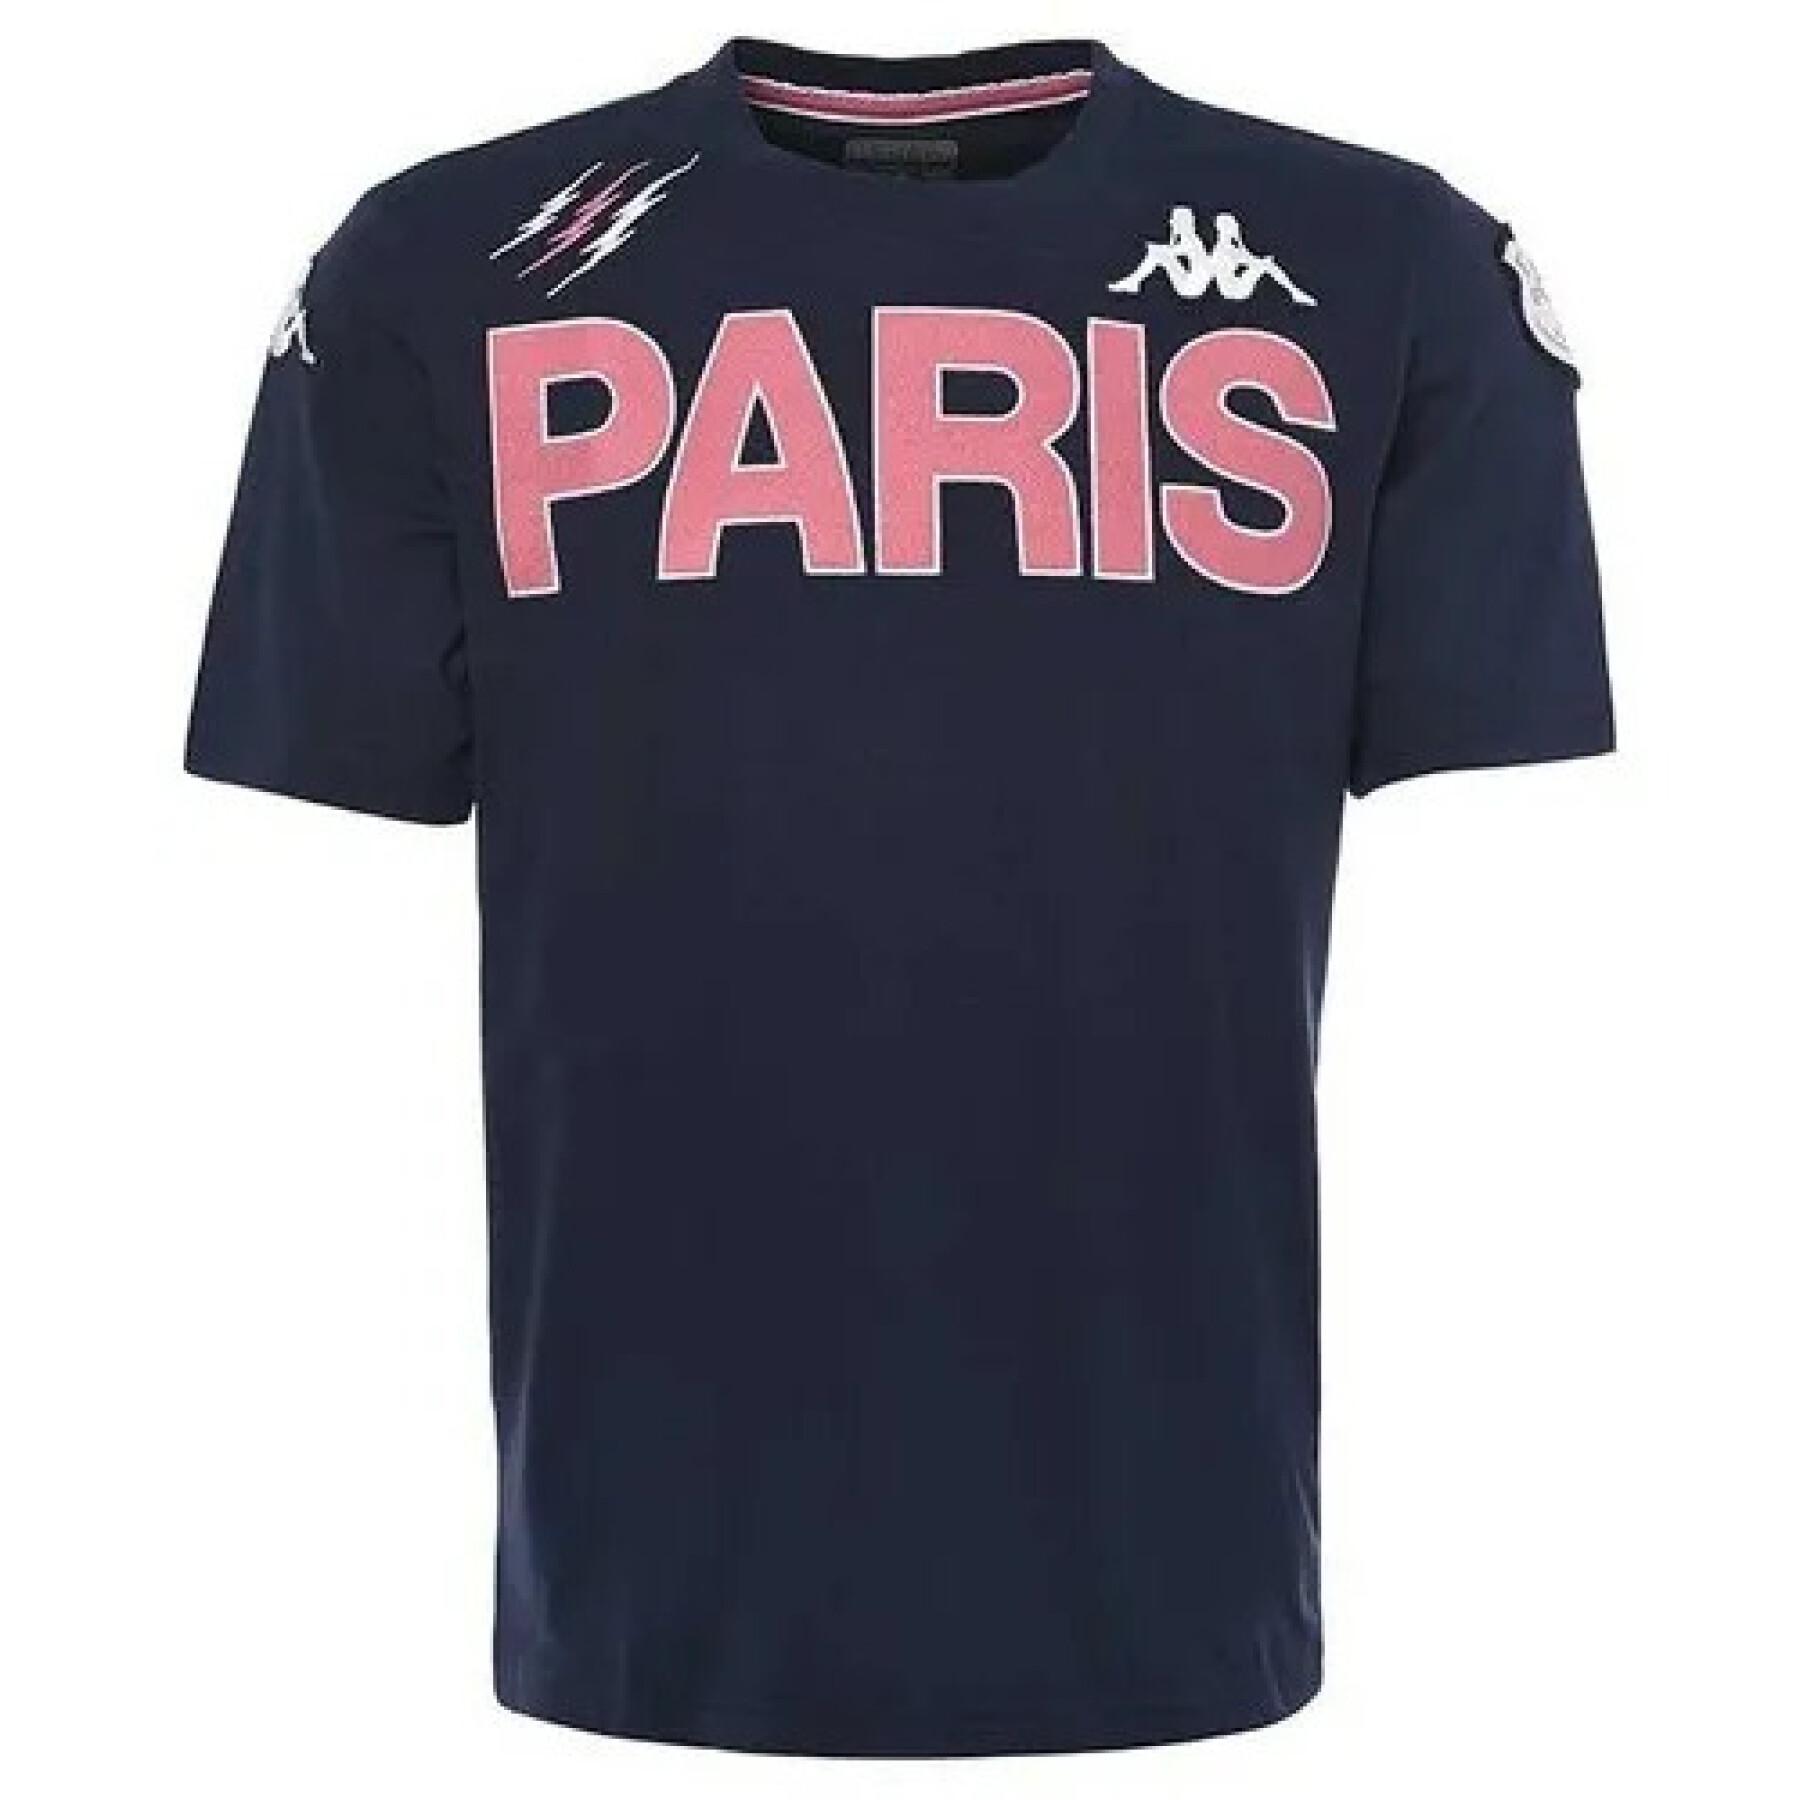 T-shirt enfant Eroi Tee Stade Français Paris